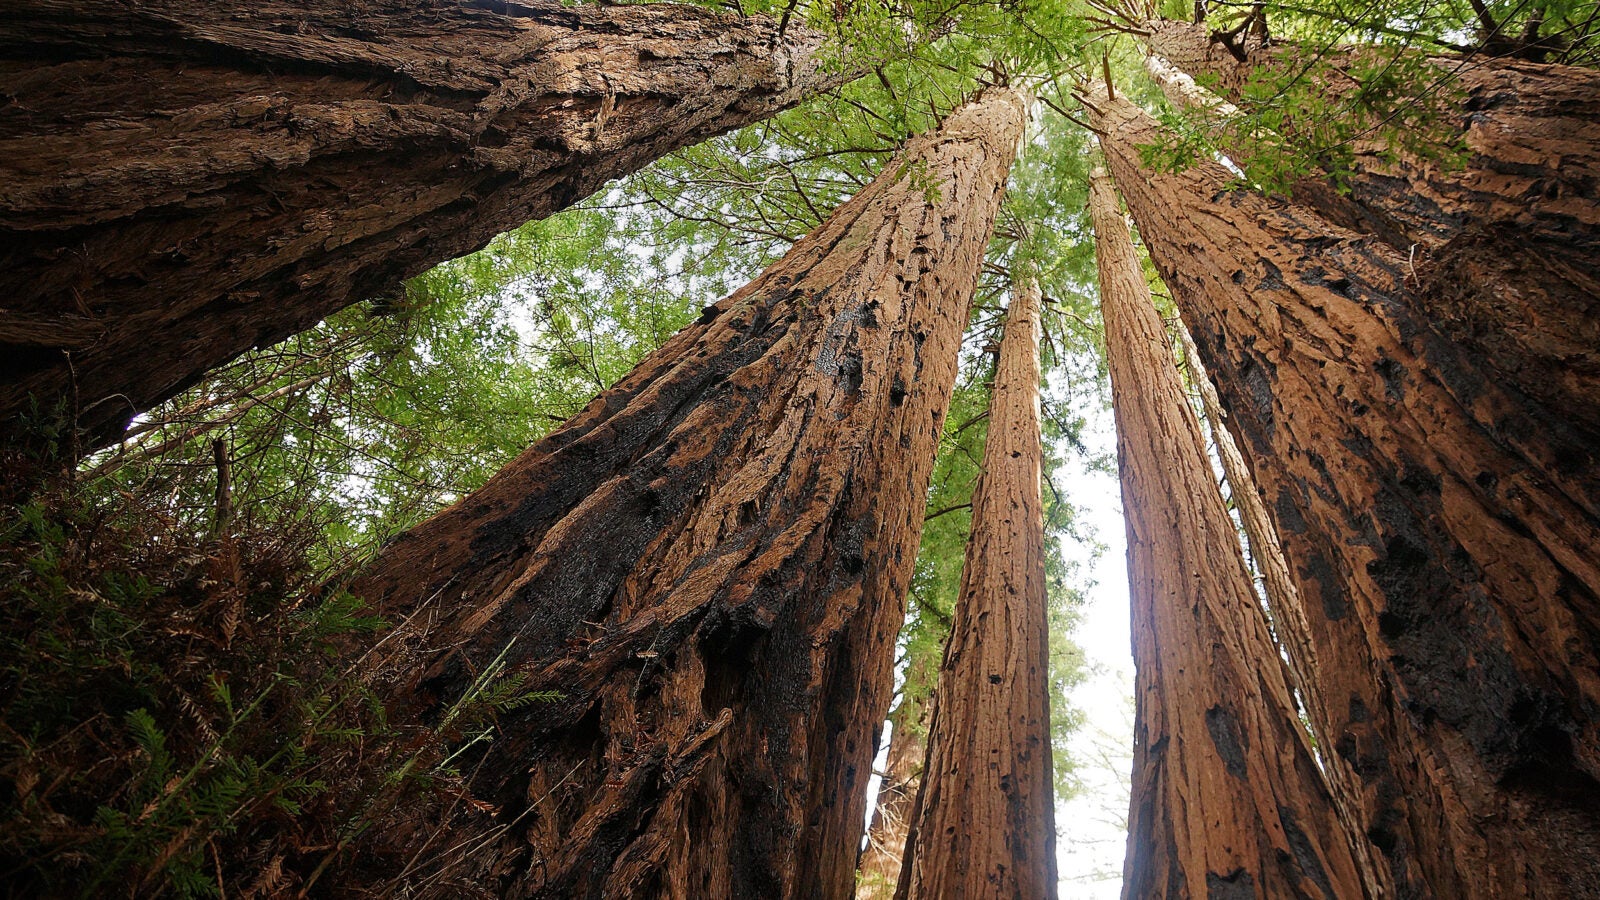 Tallest tree: Redwood tree